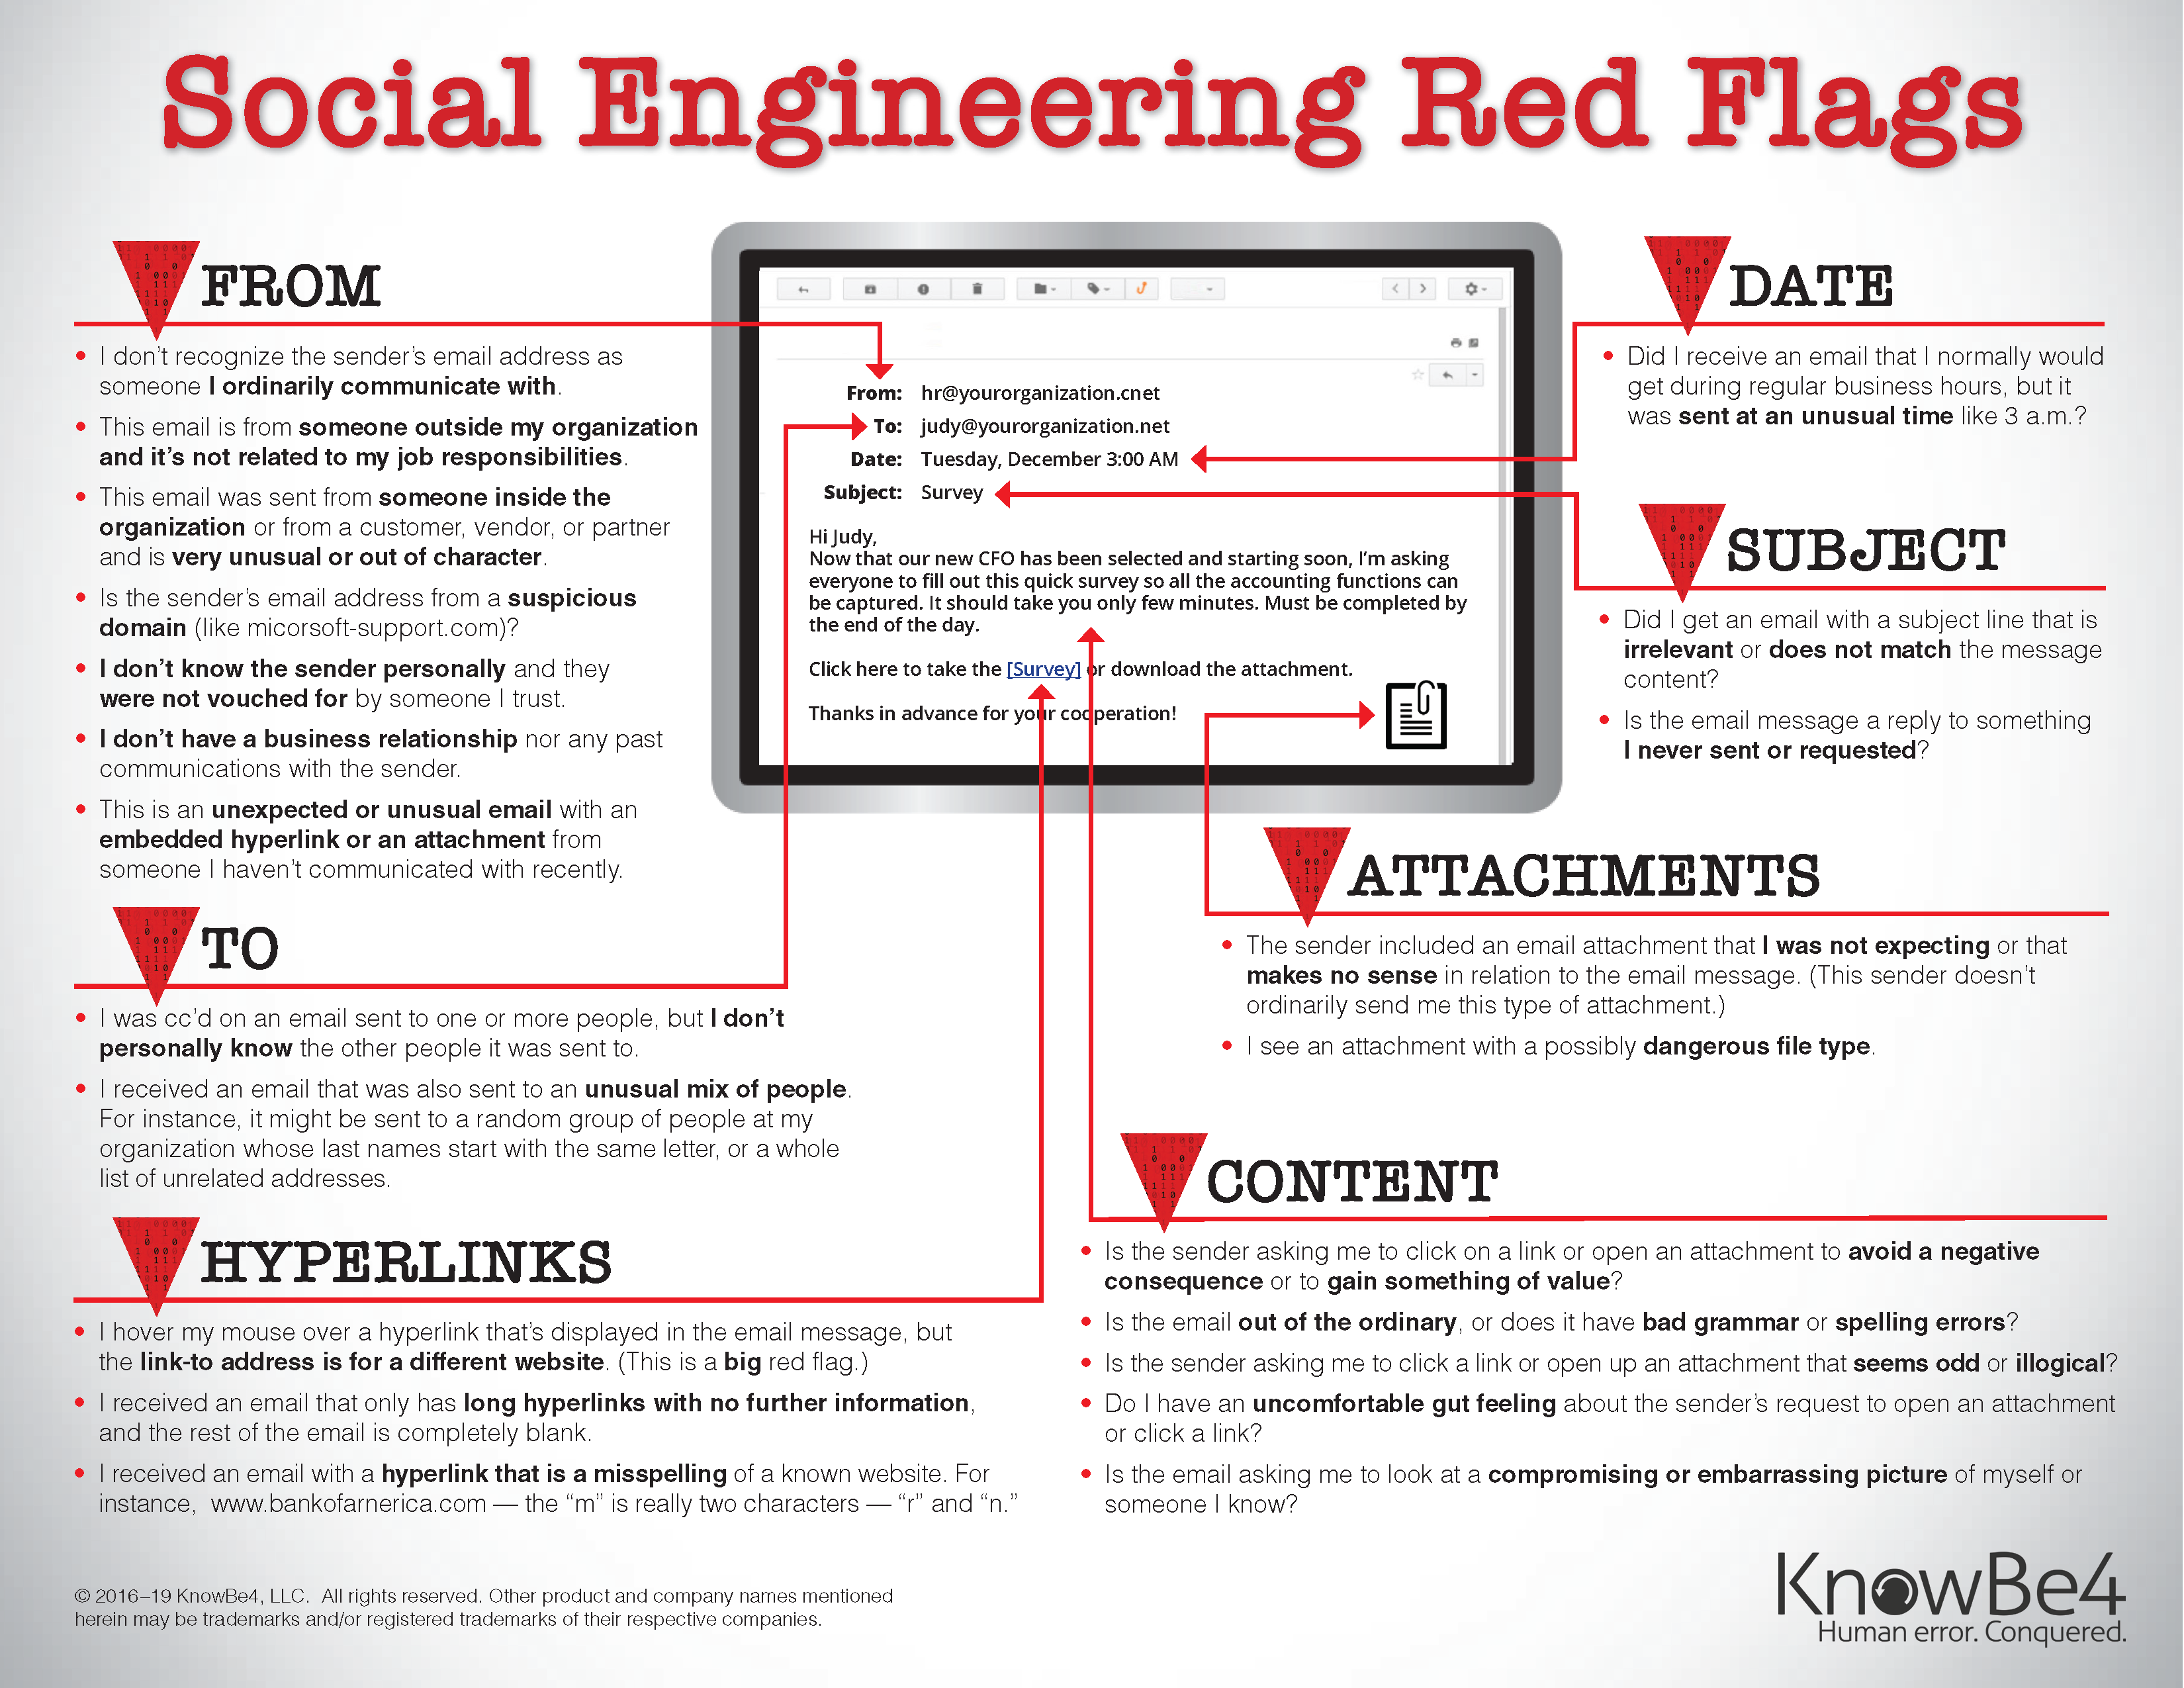 Social Engineering Red Flags KB4_security doc 2019_ENUS